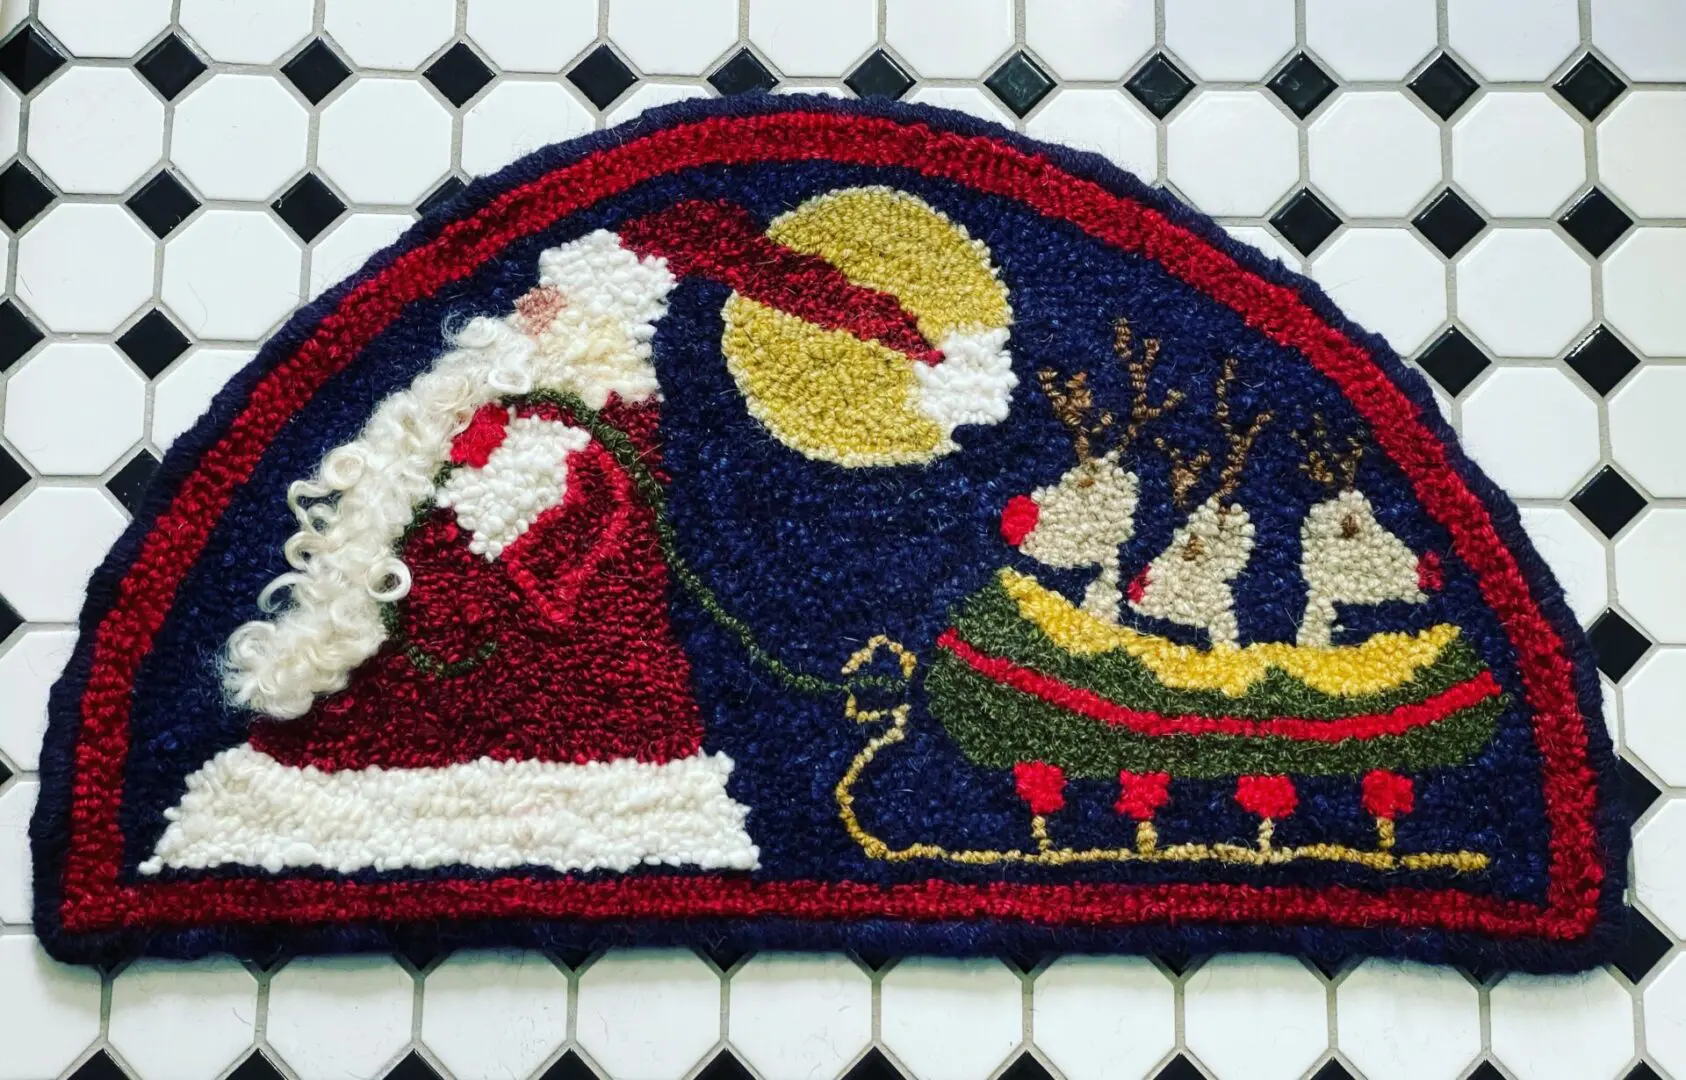 A Christmas rug